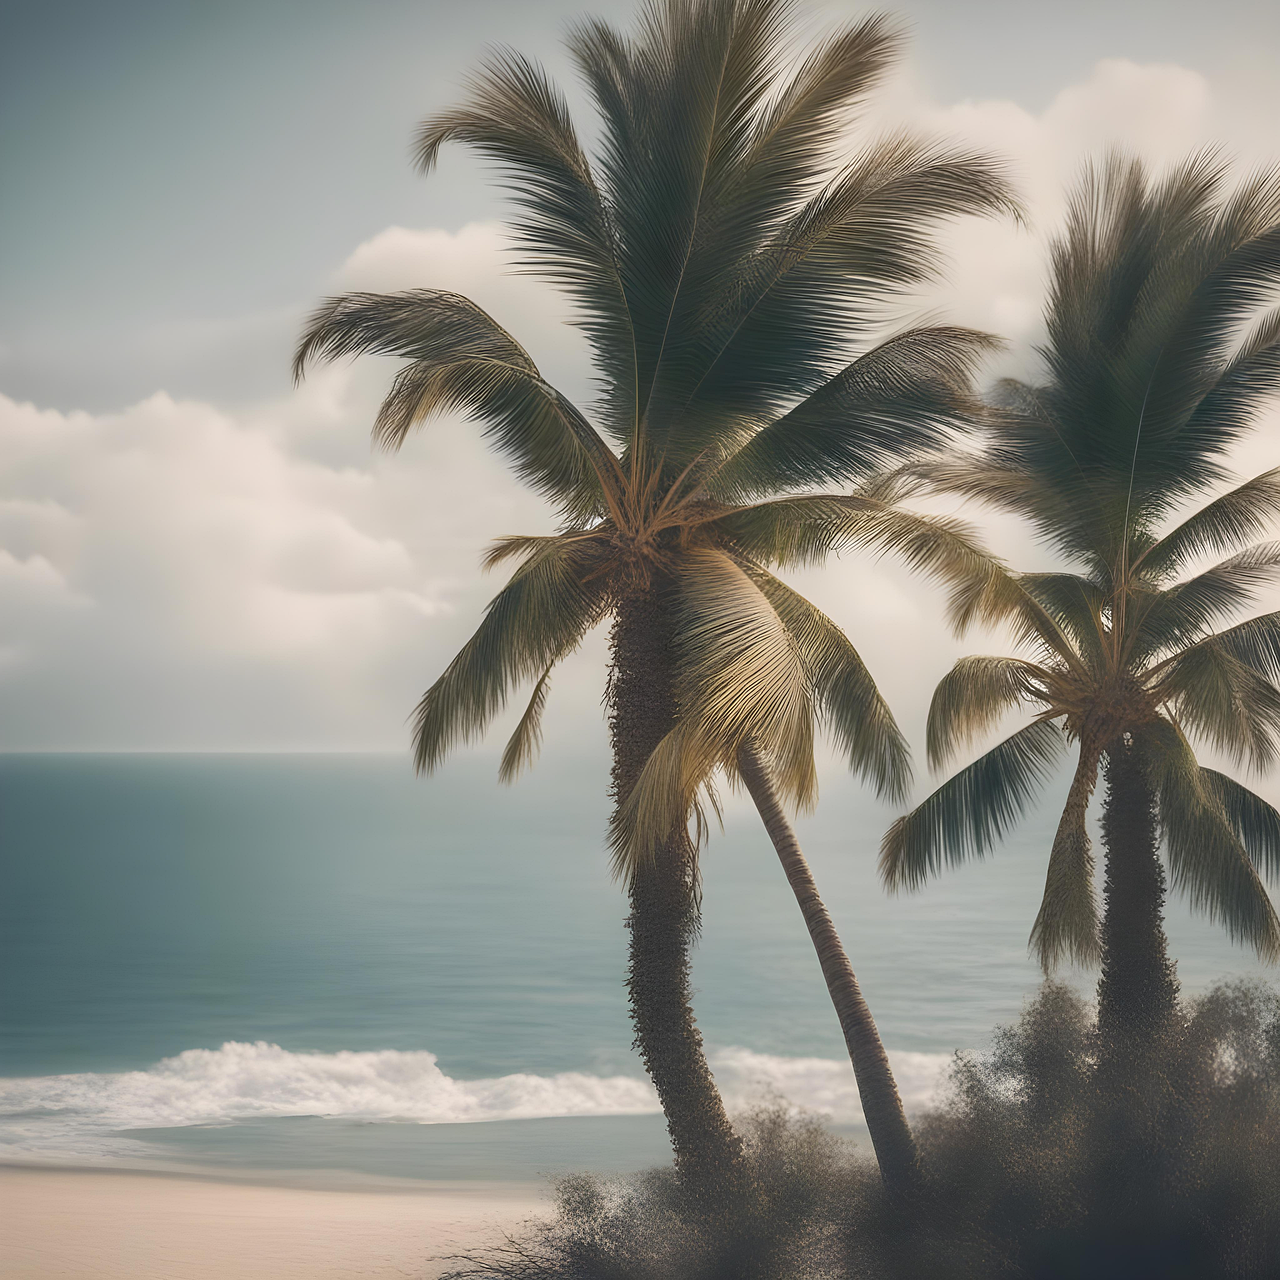  Karibik Hintergrundbild 1280x1280. Strand Küste Palmen Bild auf Pixabay